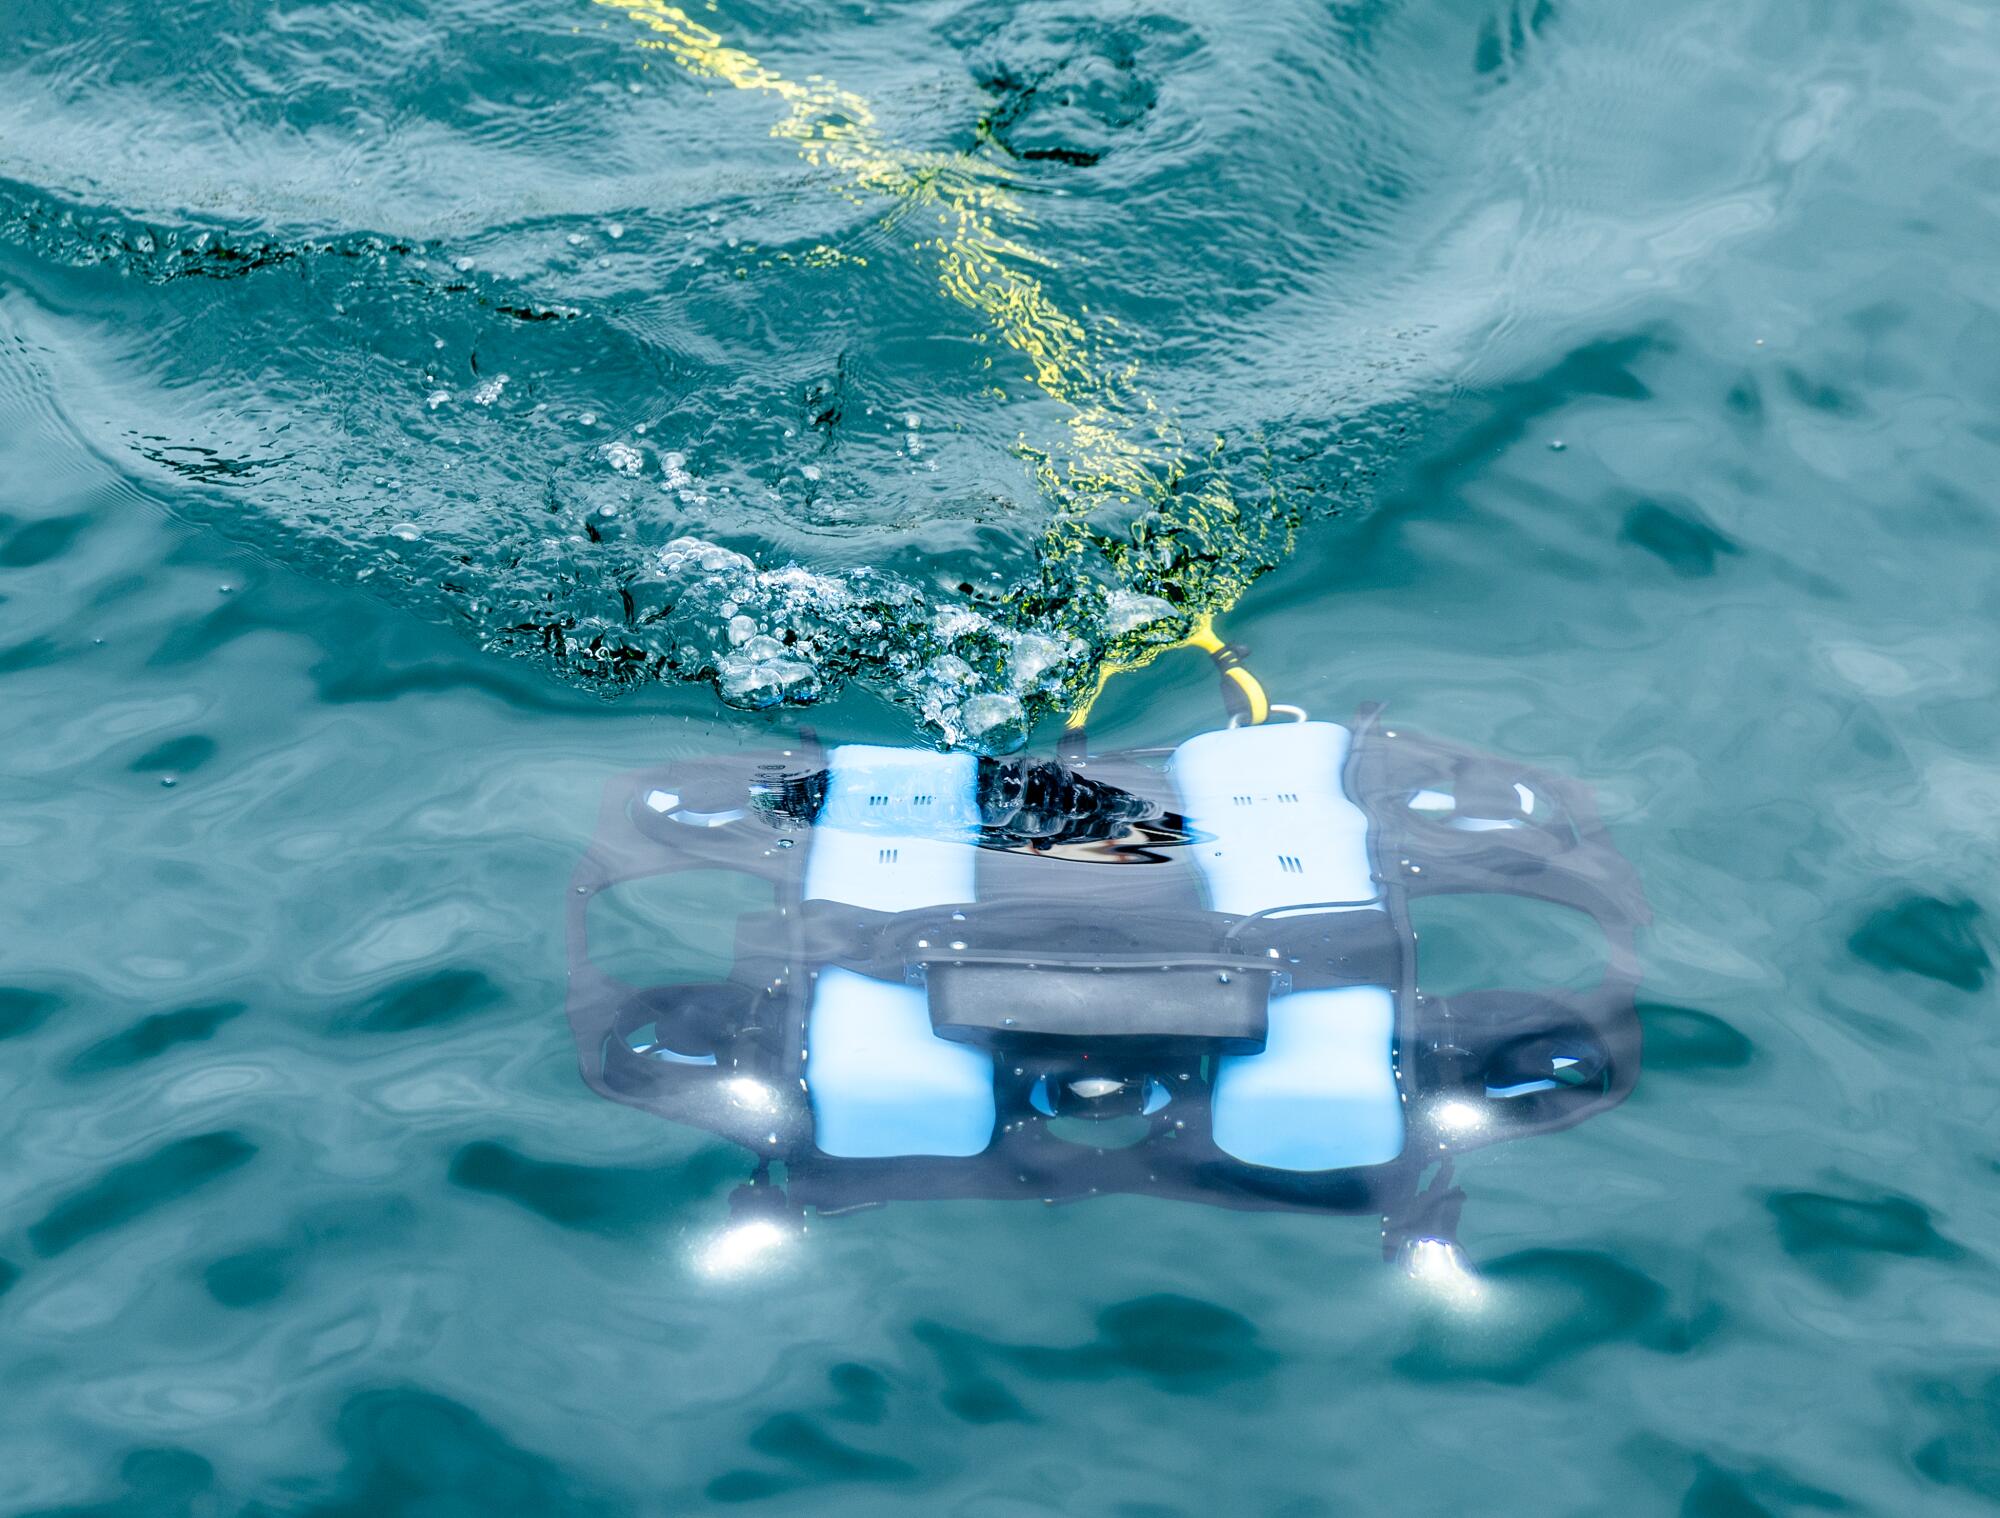 BlueROV2 是一款高性能遥控机器人 (ROV)，可用于检查、研究和探险，